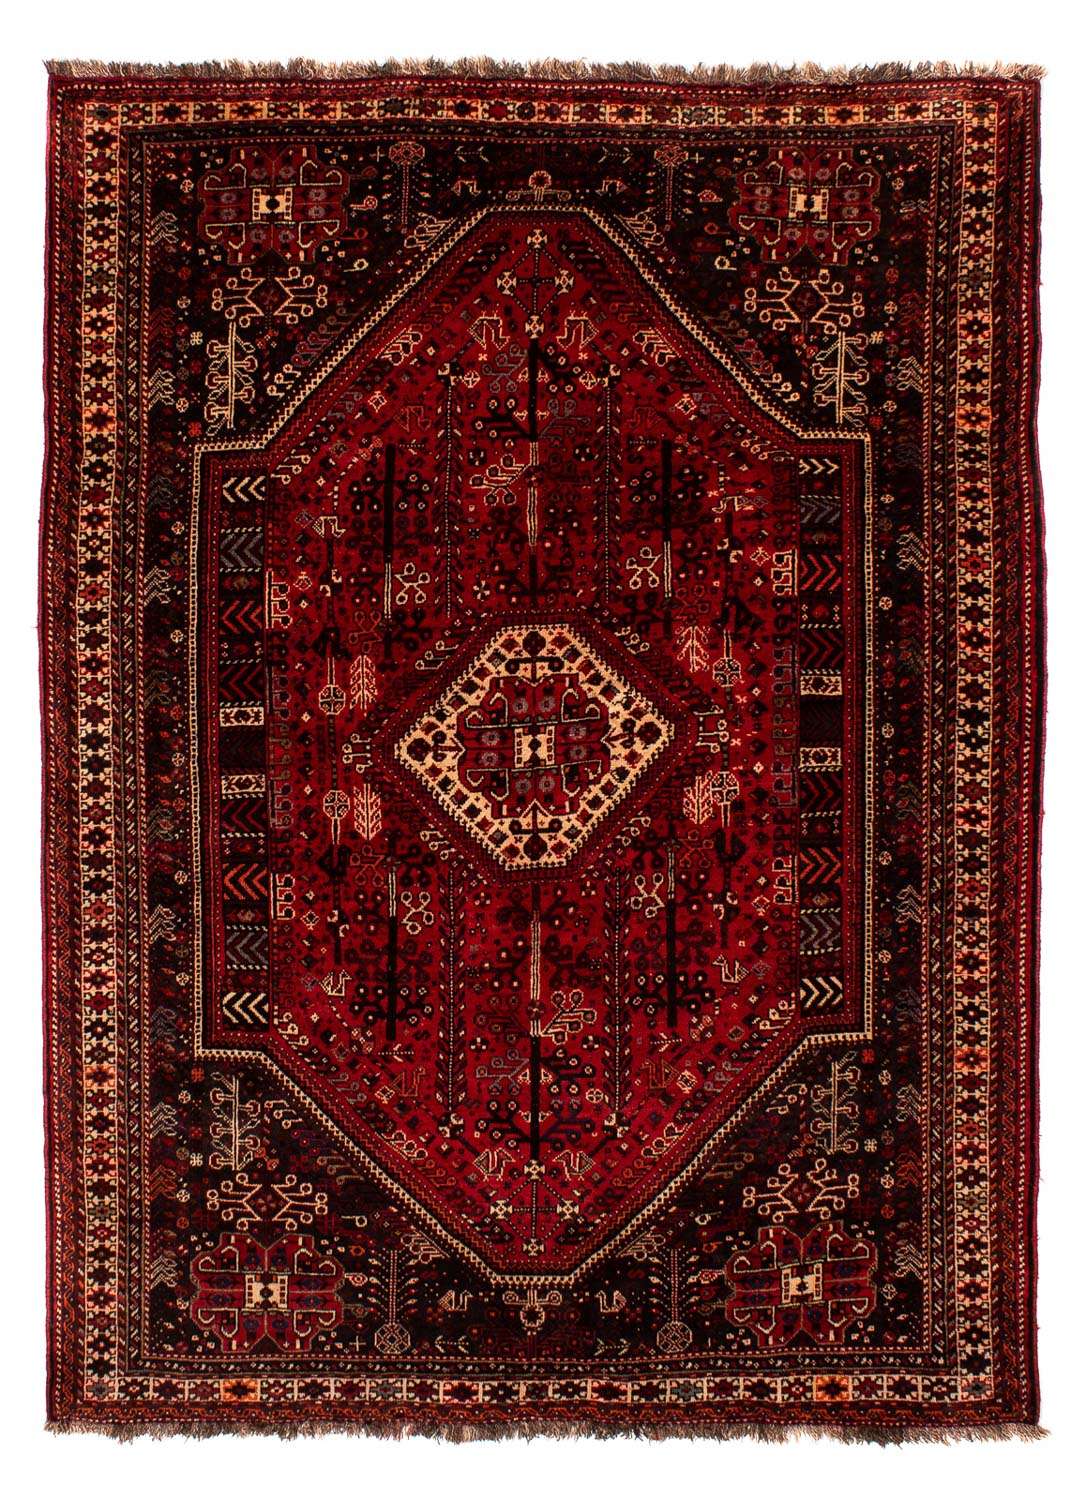 Alfombra persa - Nómada - 245 x 190 cm - rojo oscuro